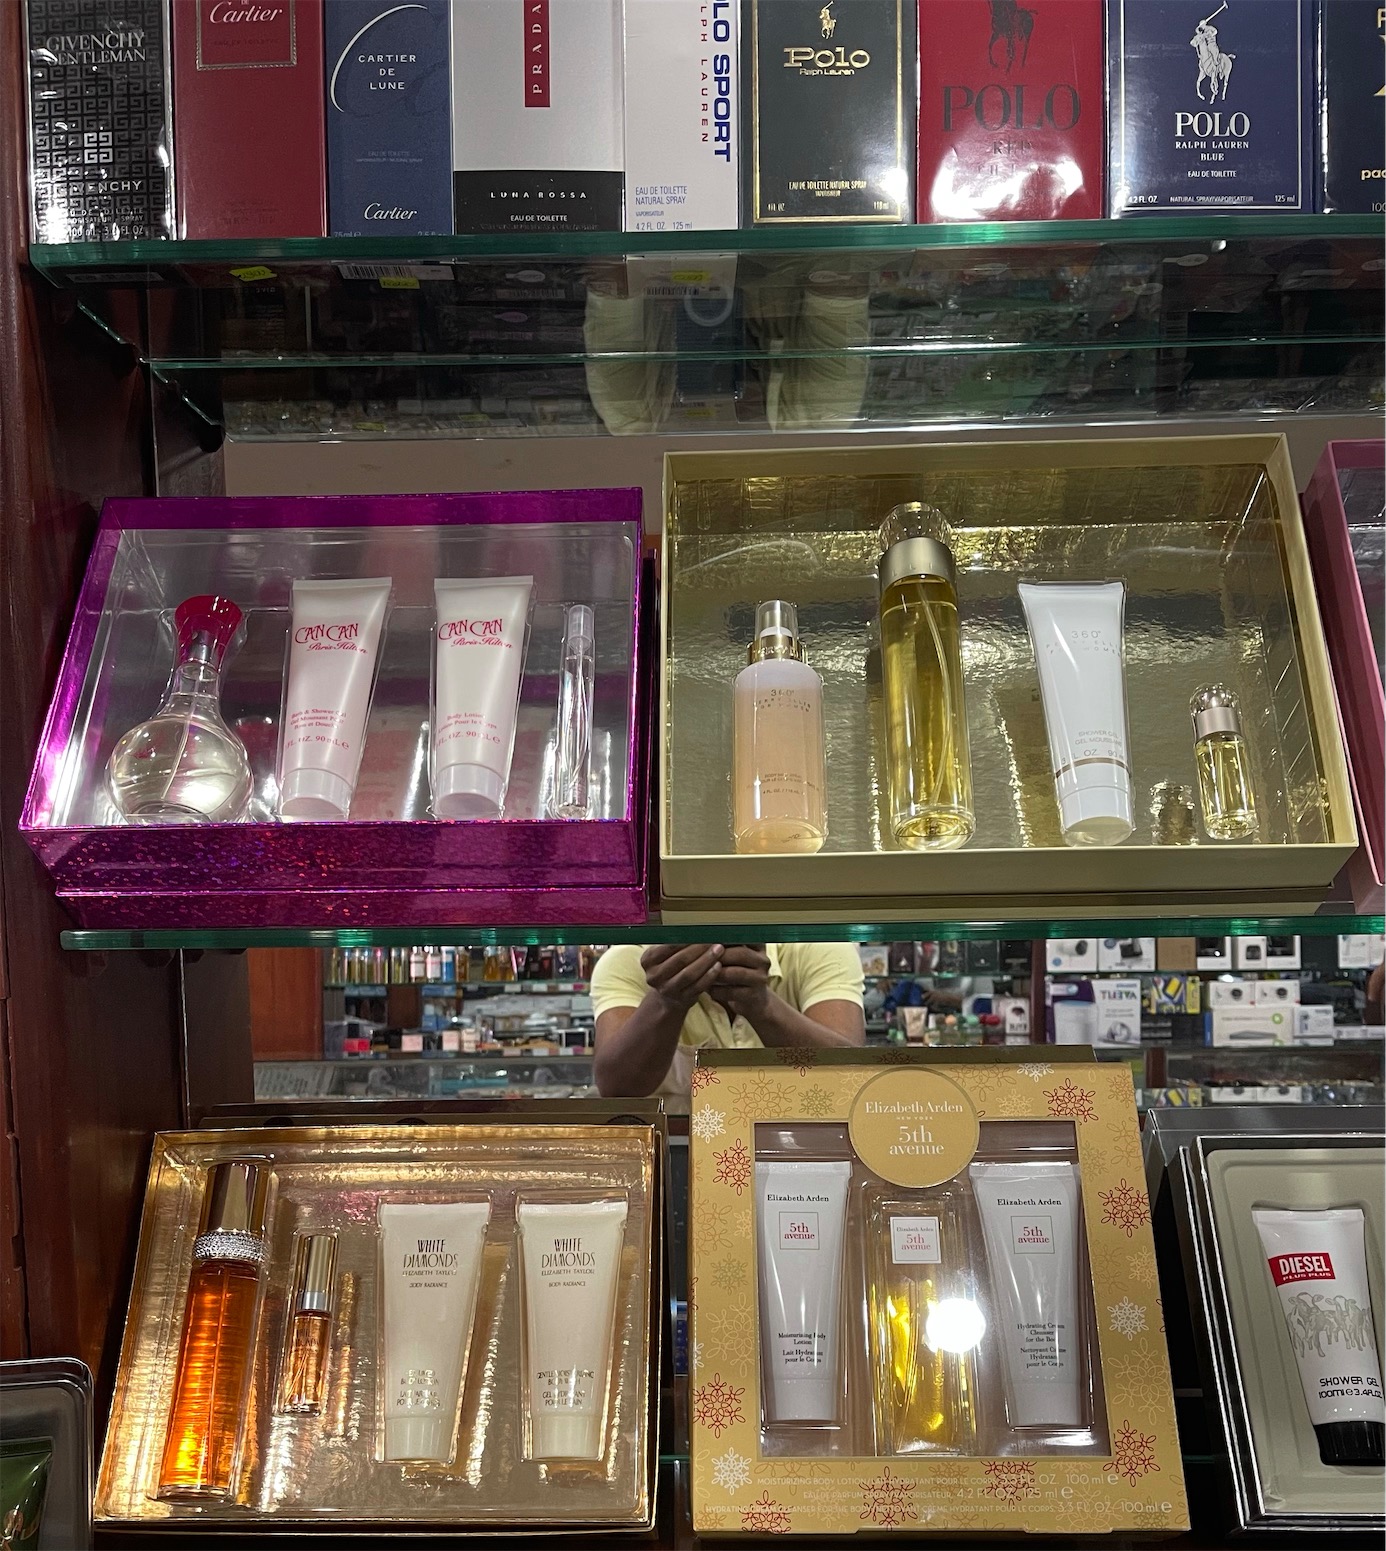 Set perfume completo para Mujeres. AL POR MAYOR Y AL DETALLE 0